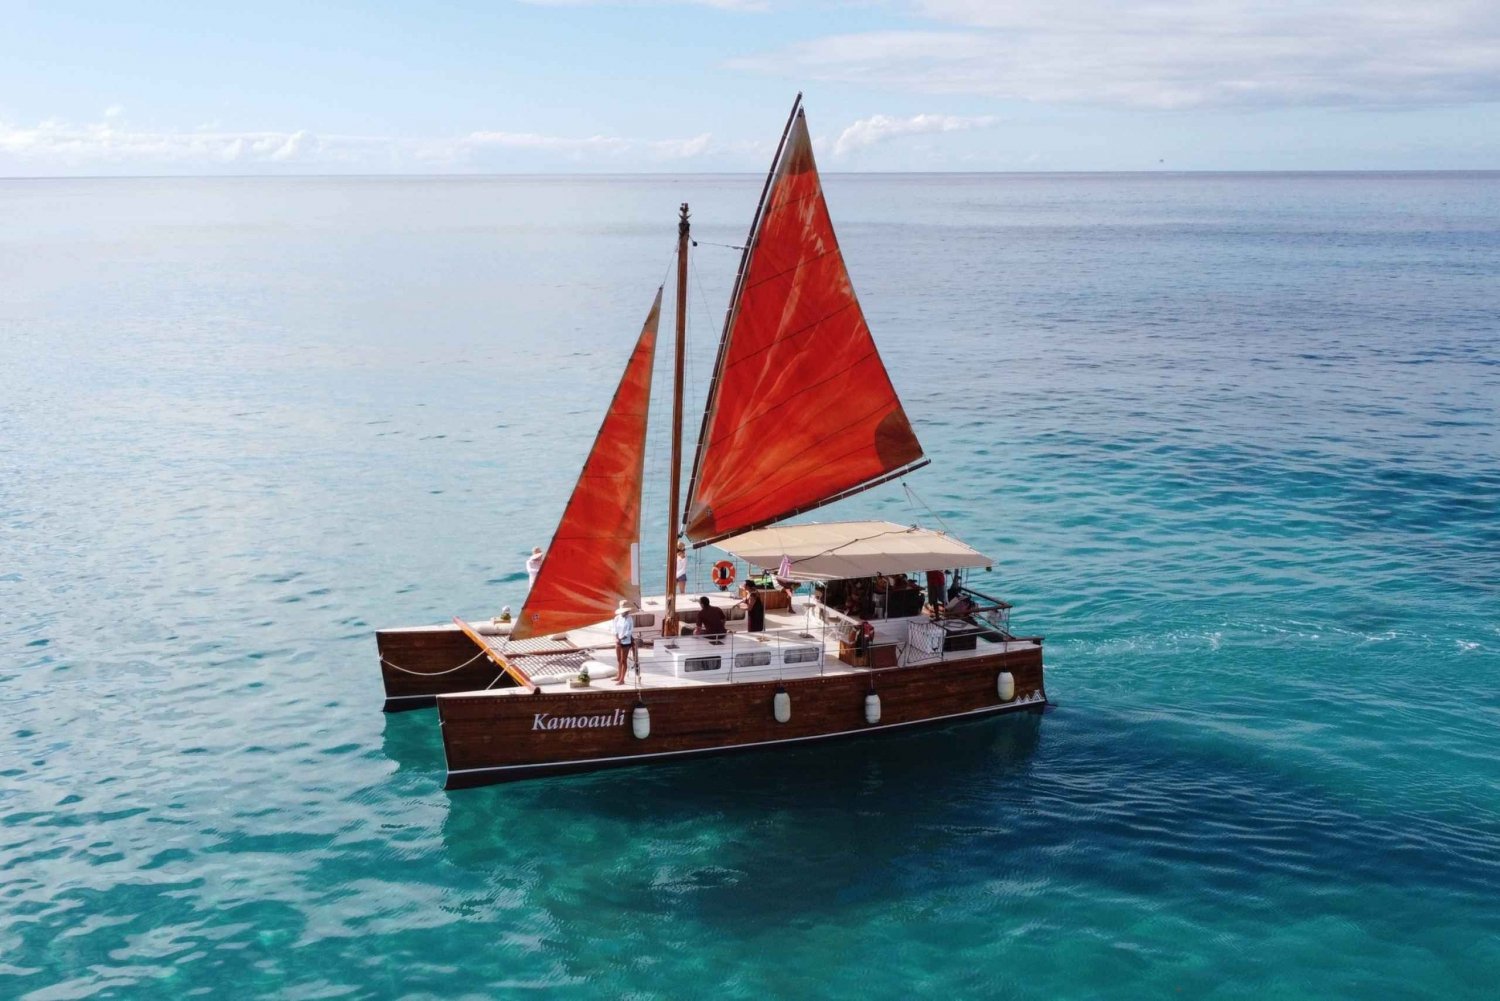 Oahu: Tradisjonelt cruise med kano ved solnedgang med middag